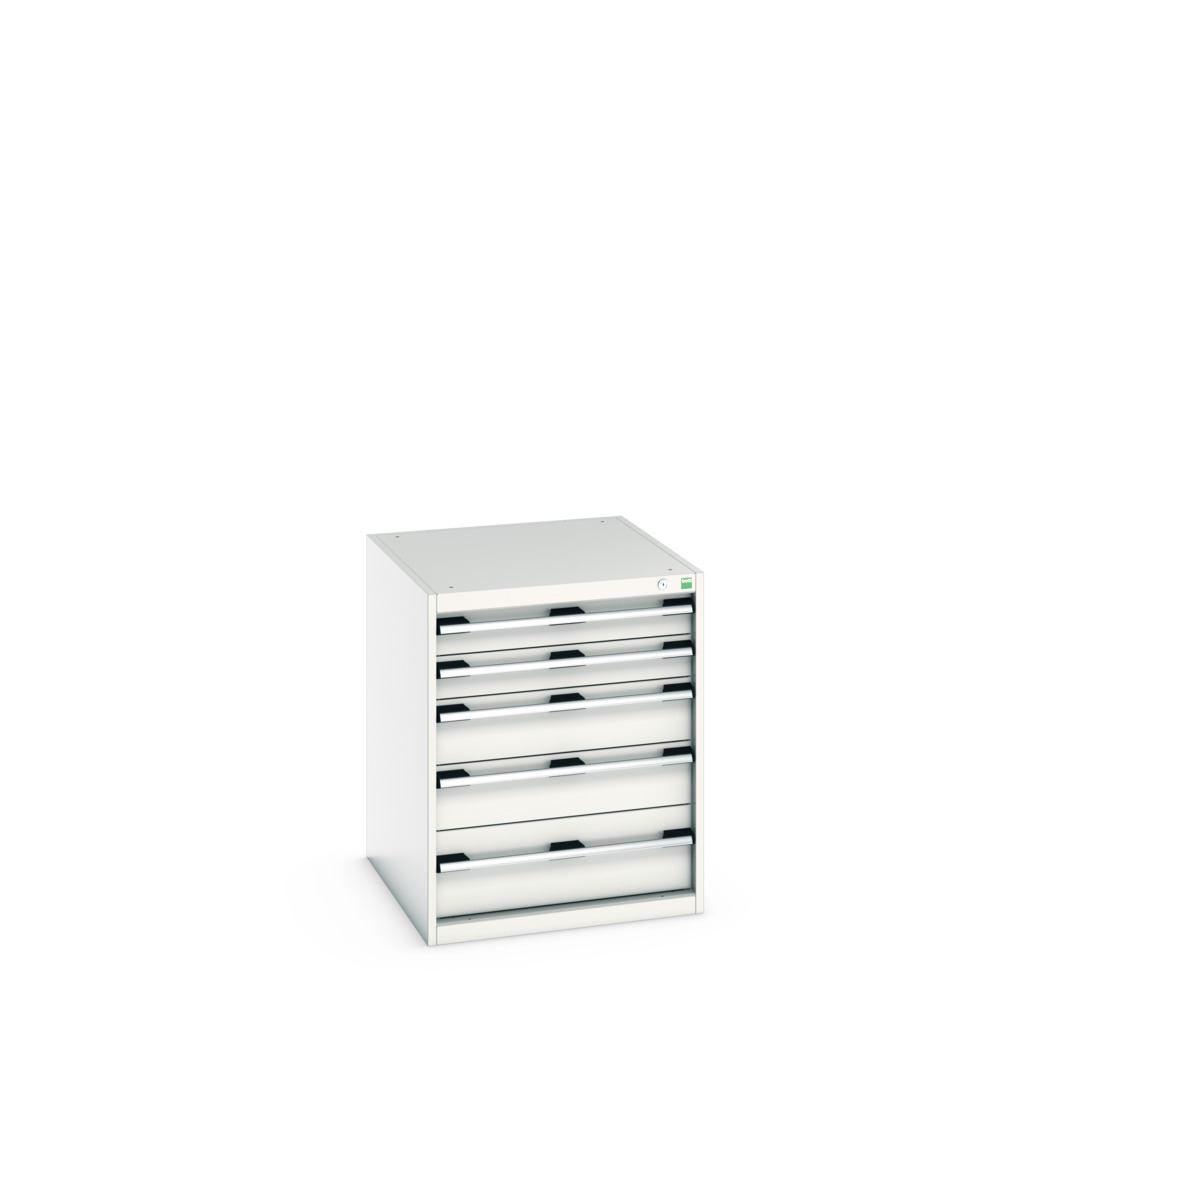 40027015.16V - cubio drawer cabinet